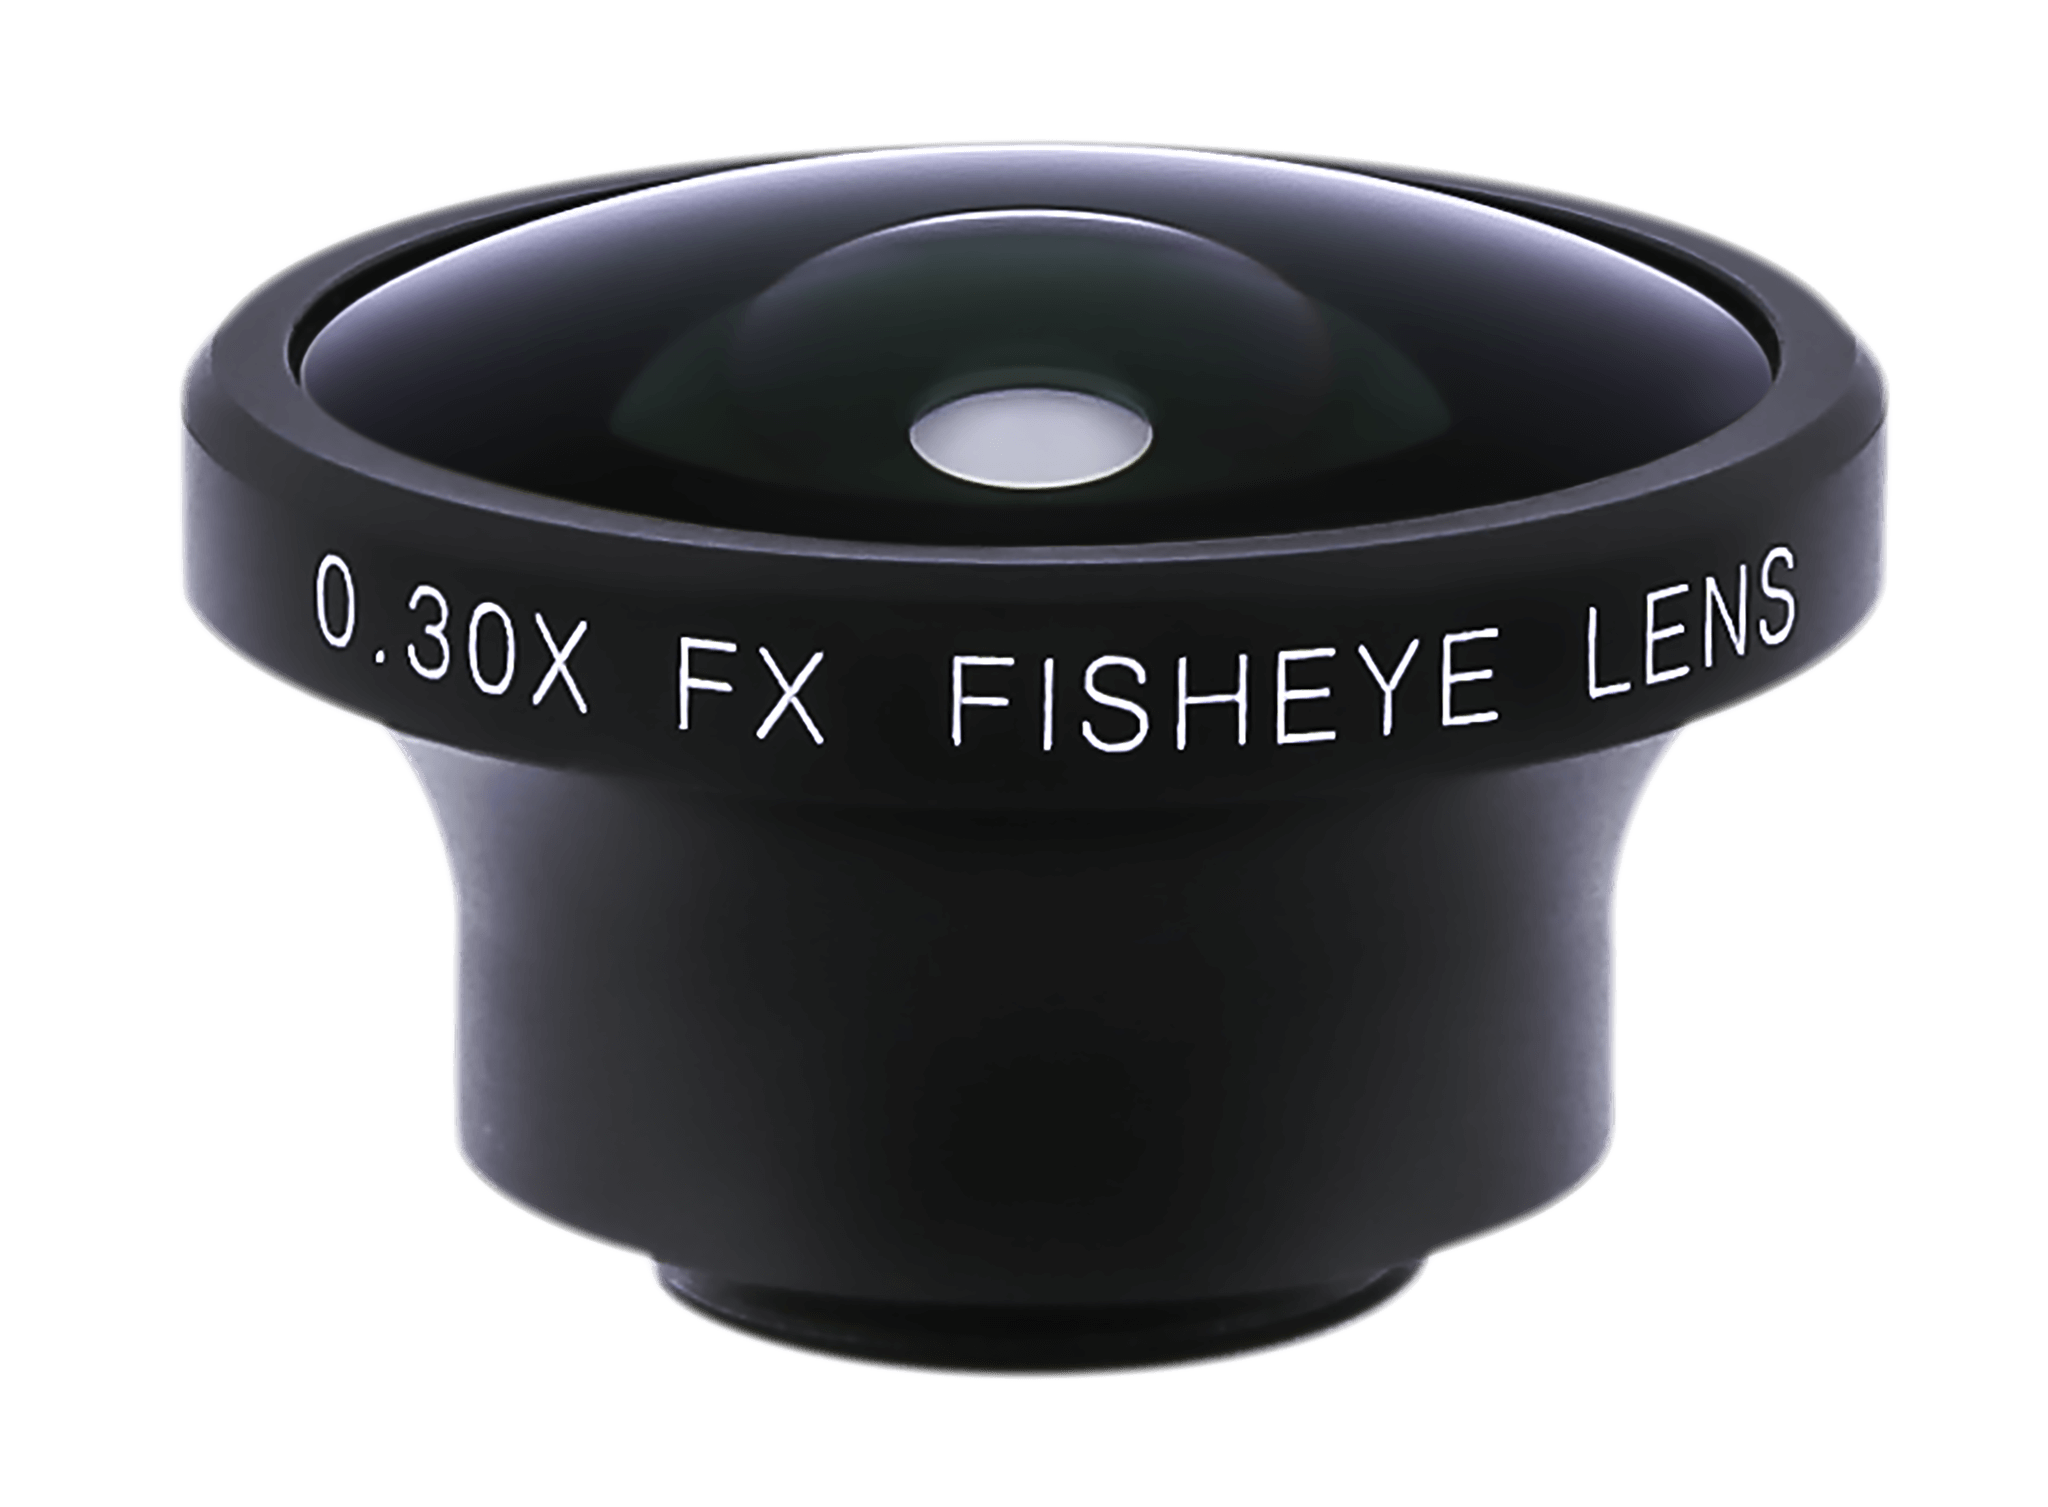 fish eye lens for mobile phone